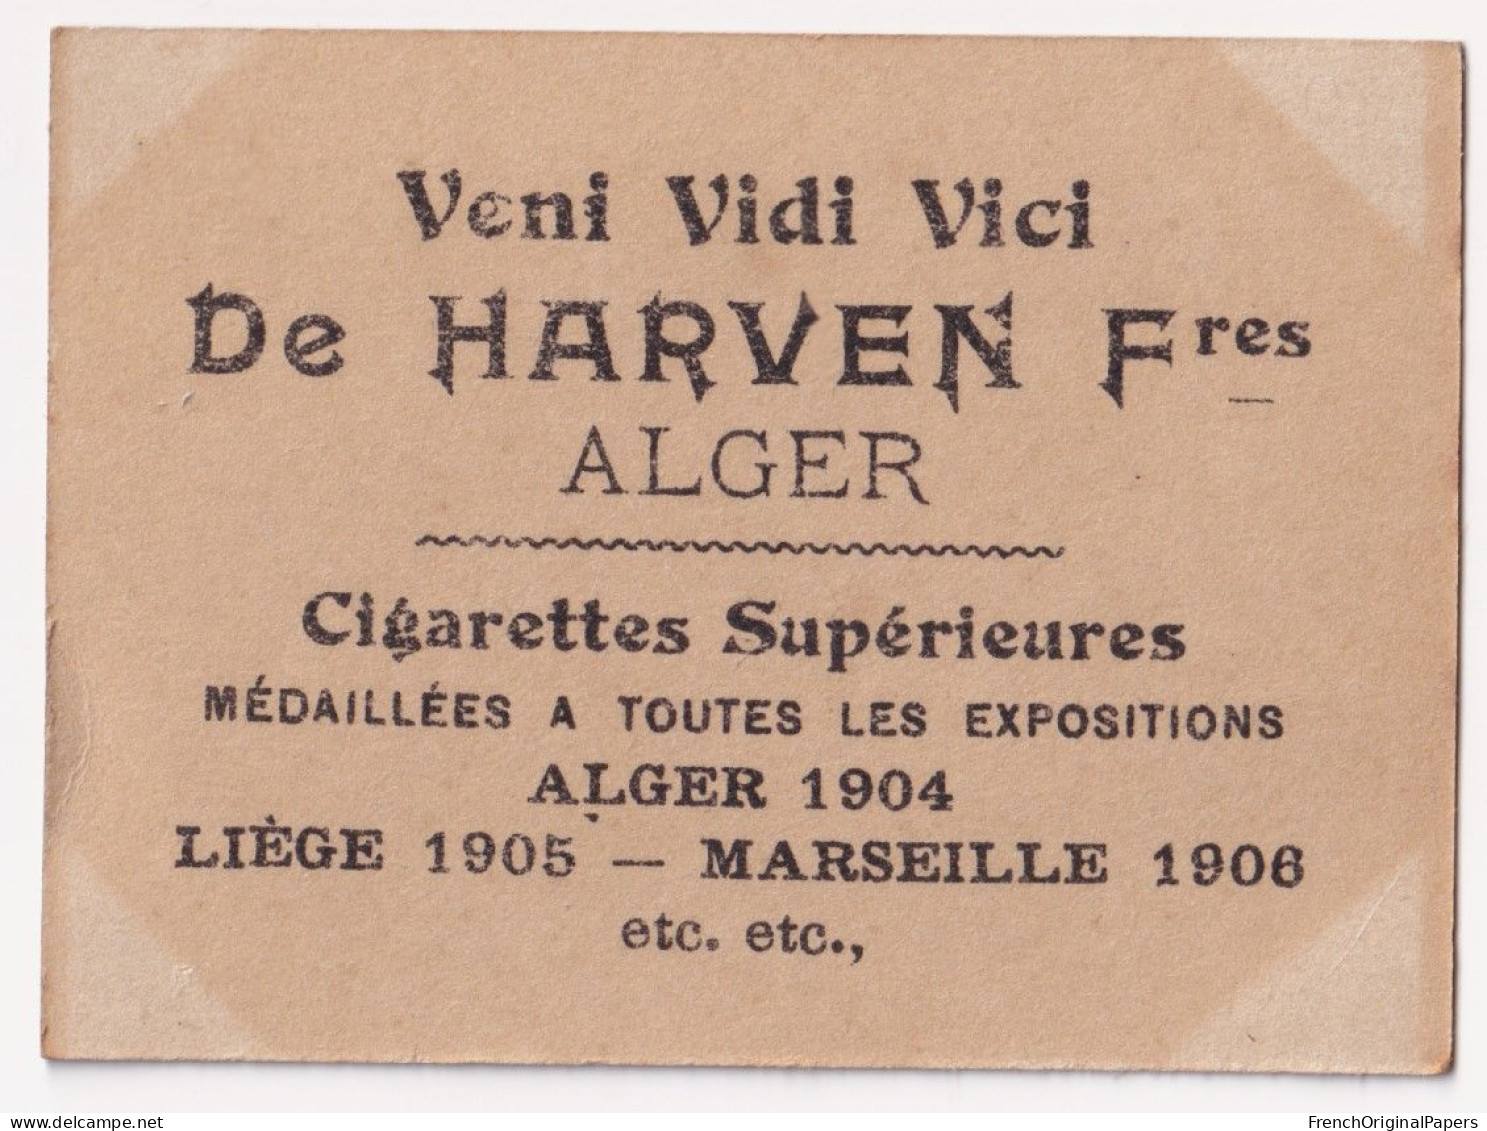 Dréna - Cigarettes De Harven 1910 Photo Femme Sexy Lady Pin-up Woman Nue Nude Nu Seins Nus Vintage Alger épée A62-9 - Other Brands